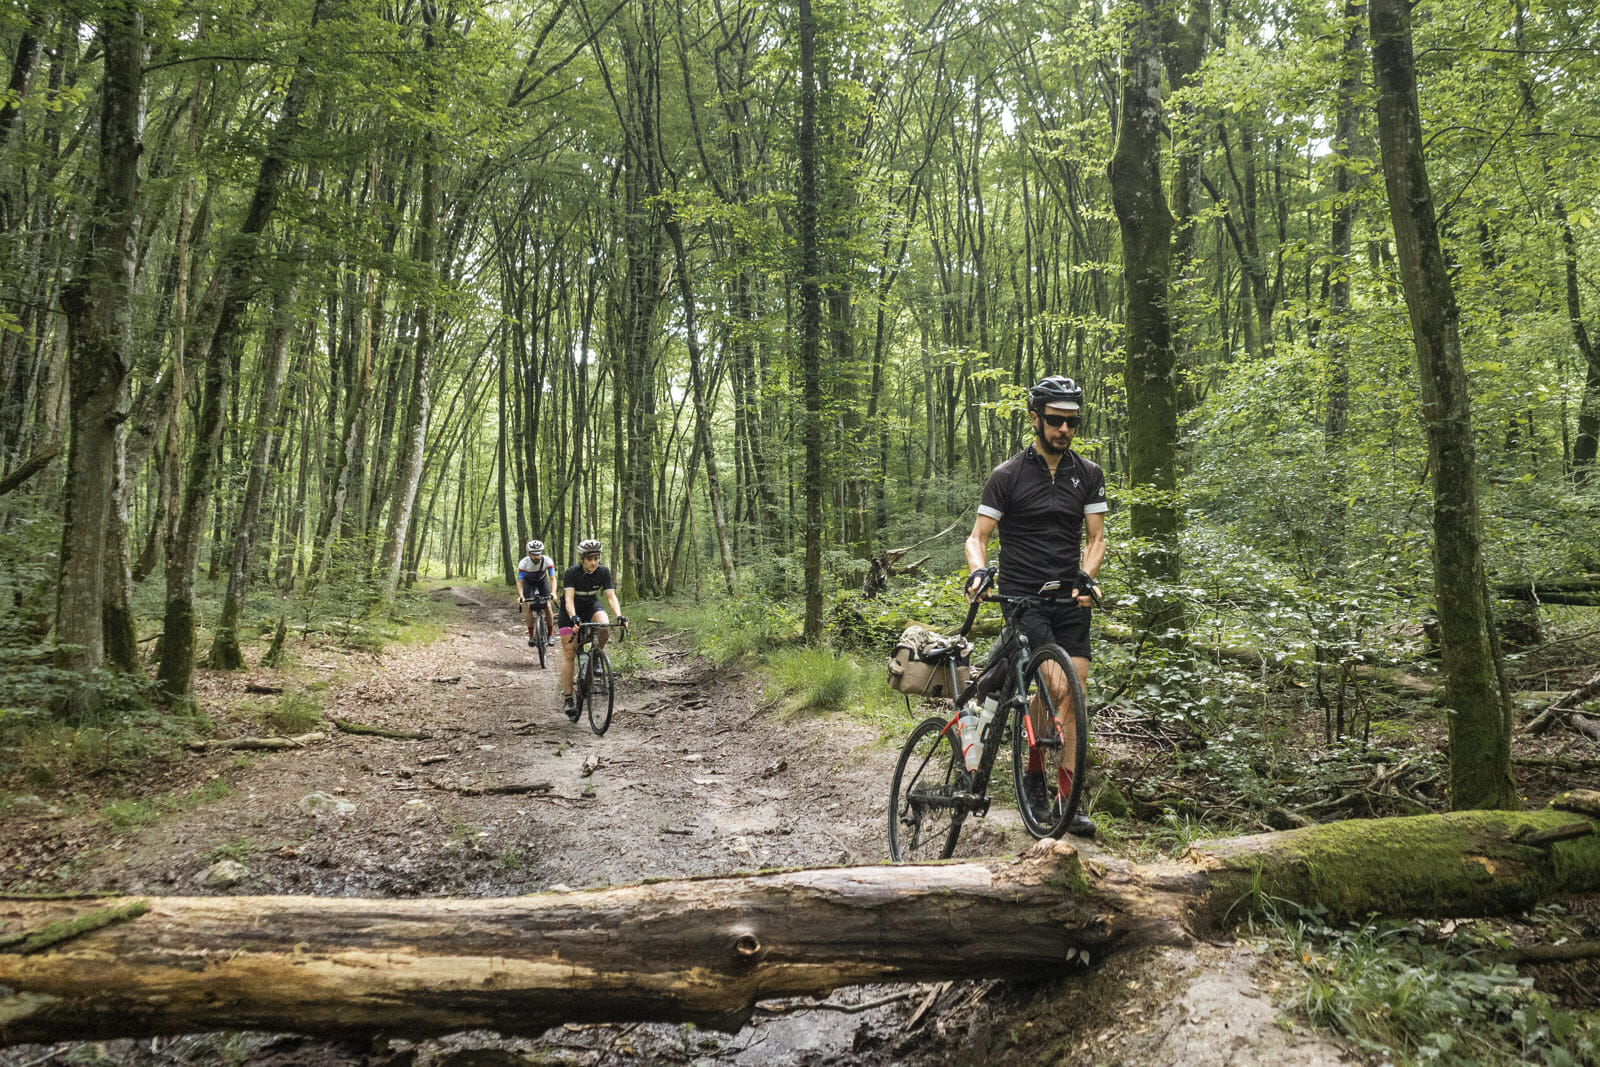  cyclistes dans une forêt